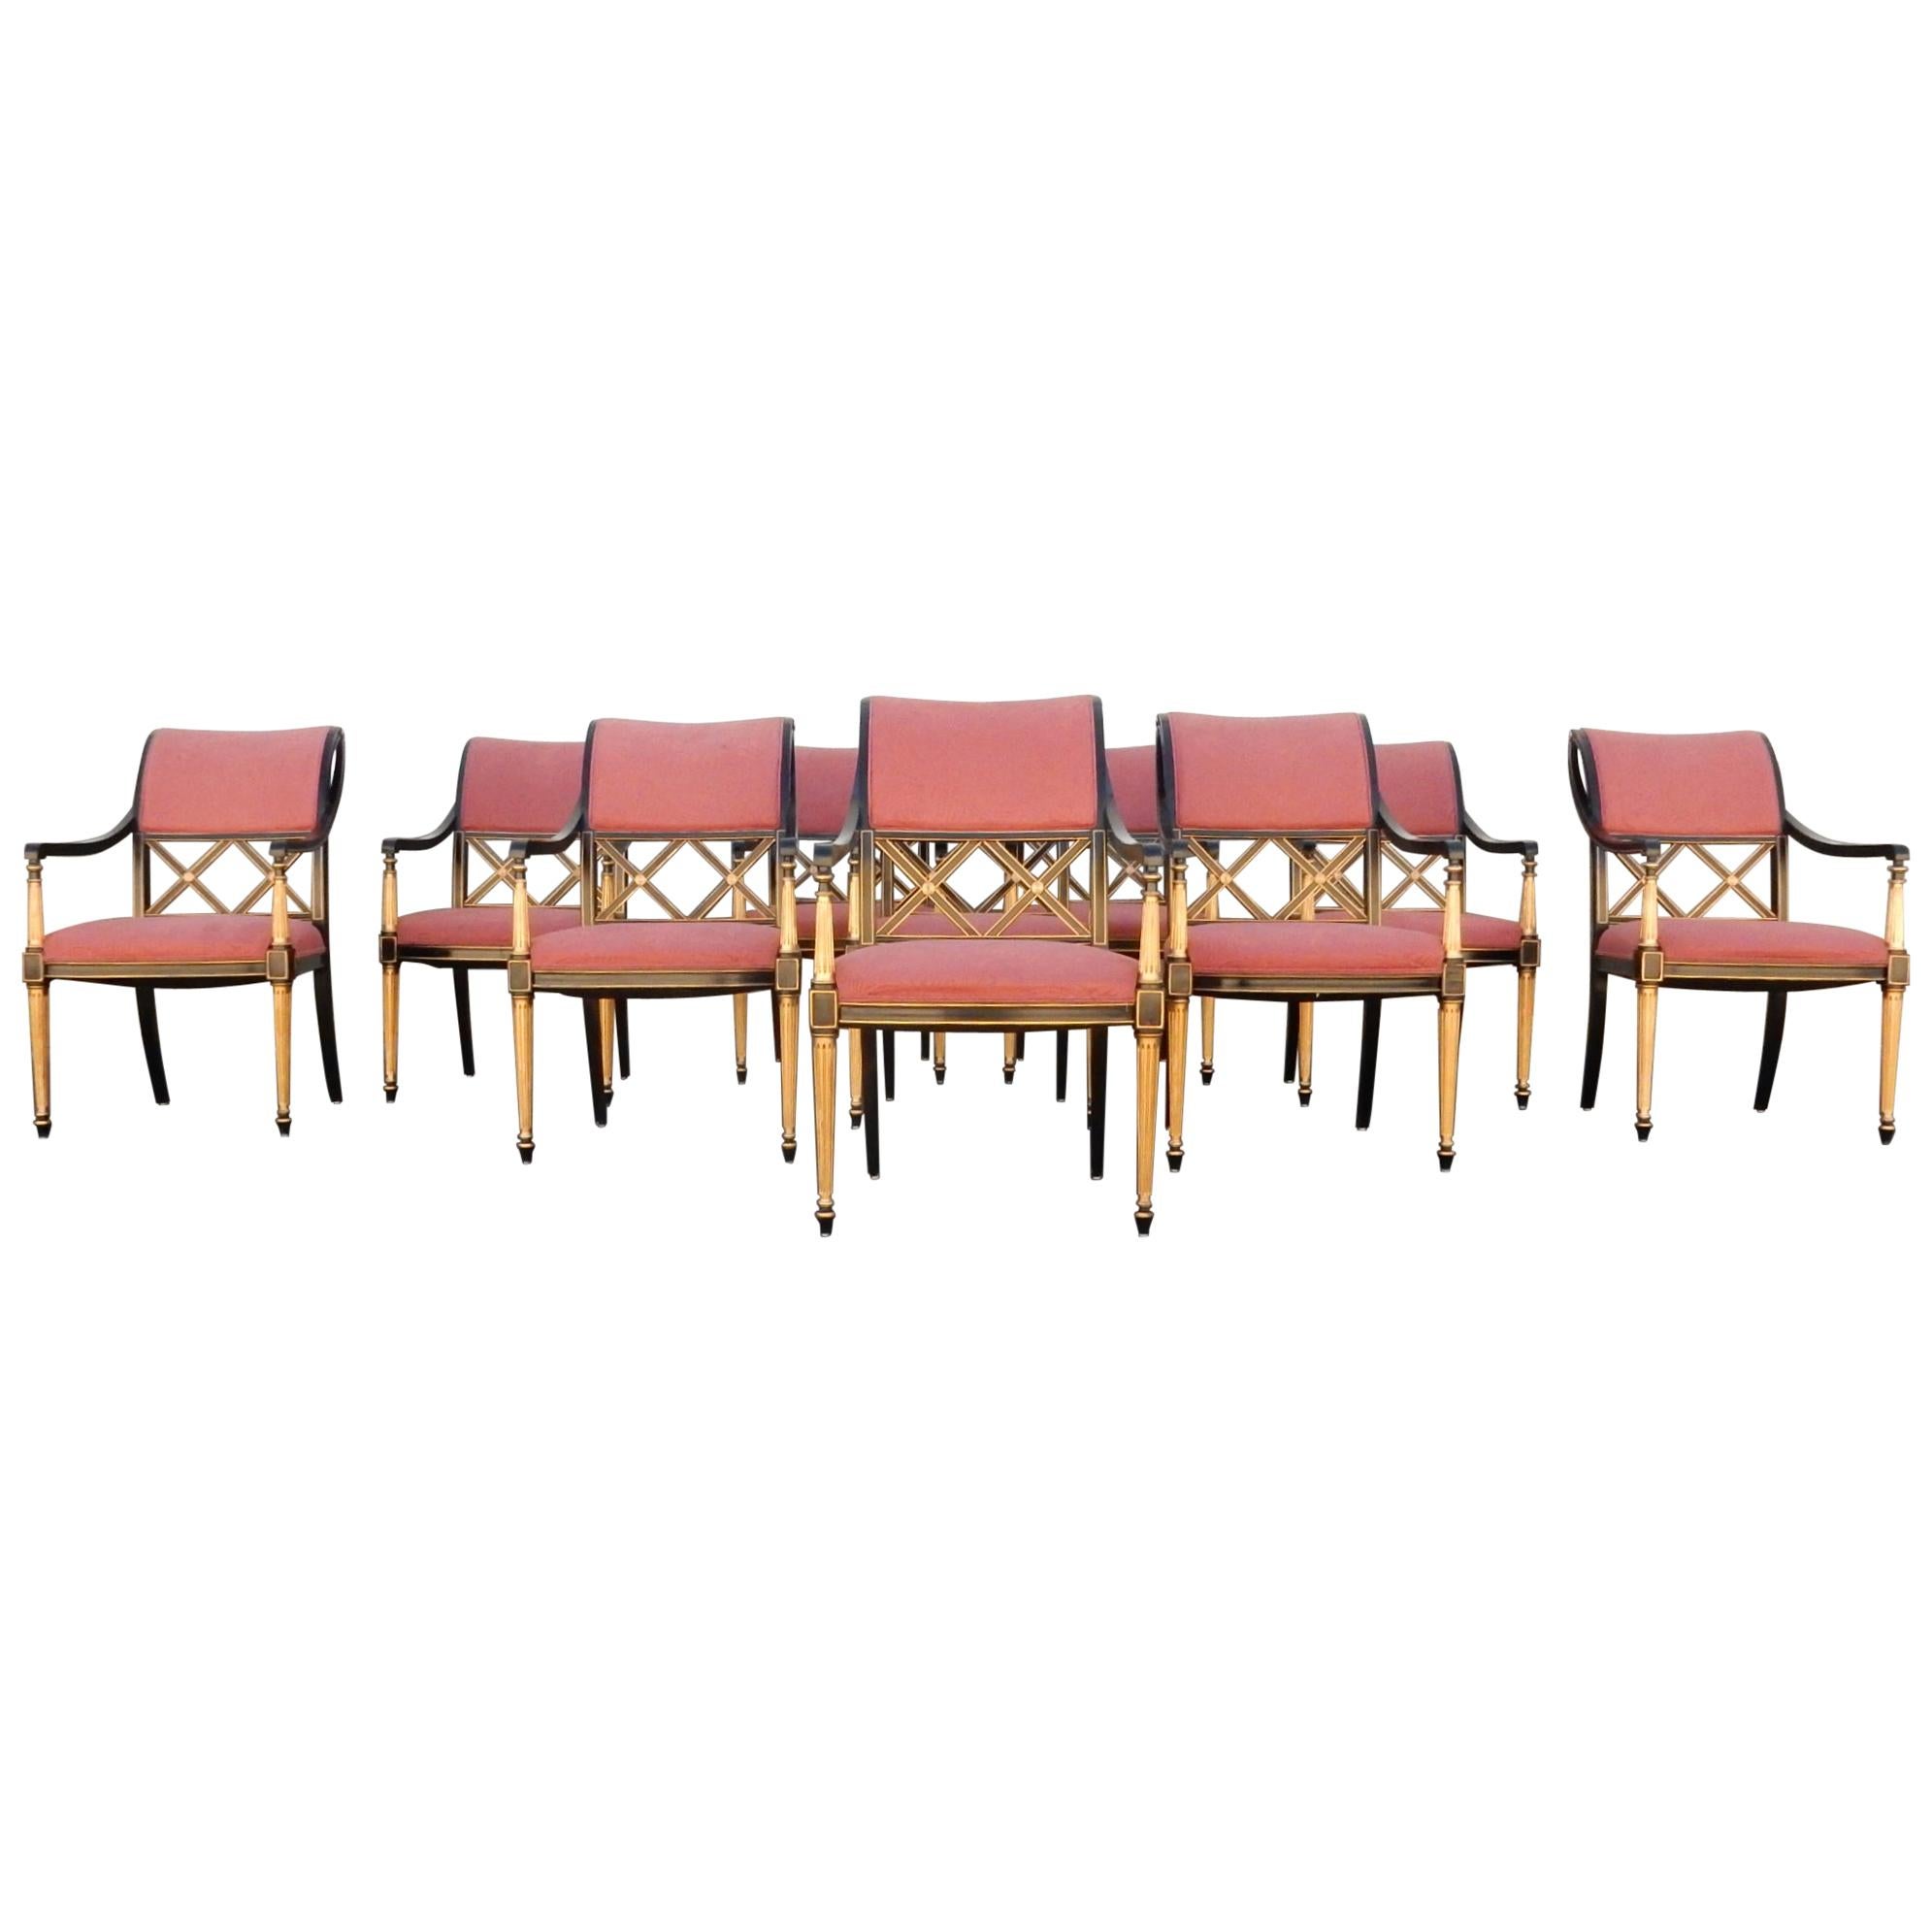 Regency Dining Chairs by Dorothy Draper Design for Henredon Set of 10